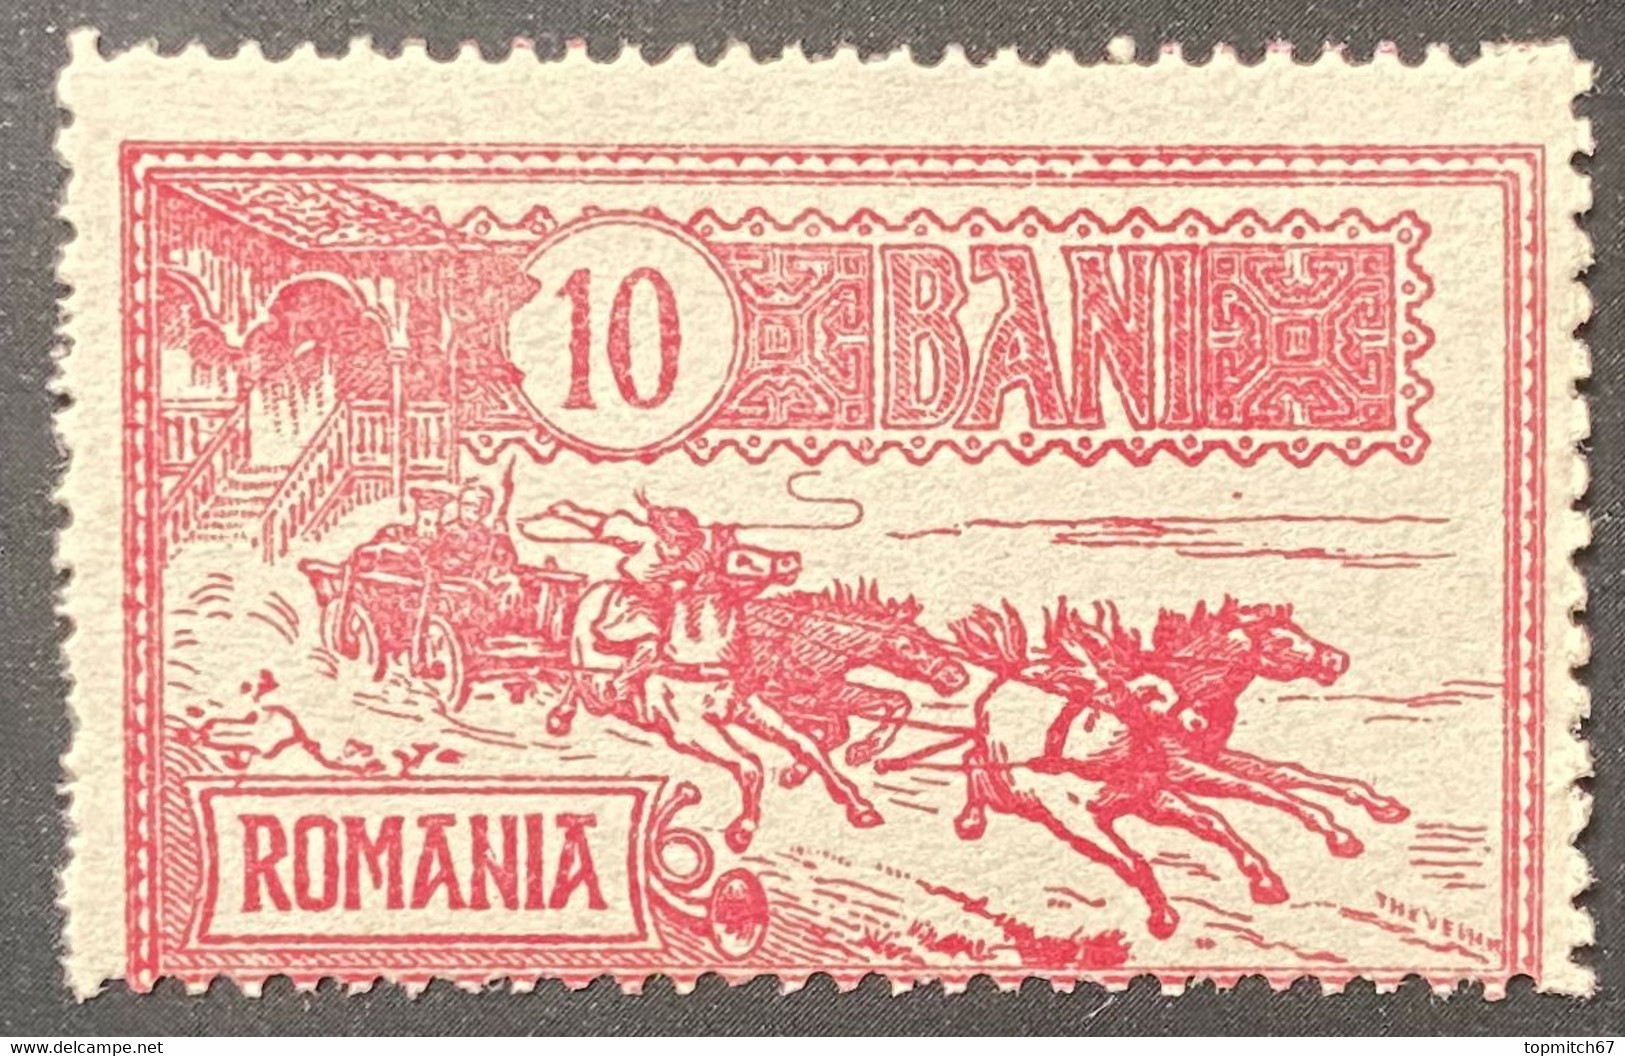 ROM0140MNH - Mail Coach - 10 Bani MNH Stamp - Romania - 1903 - Neufs